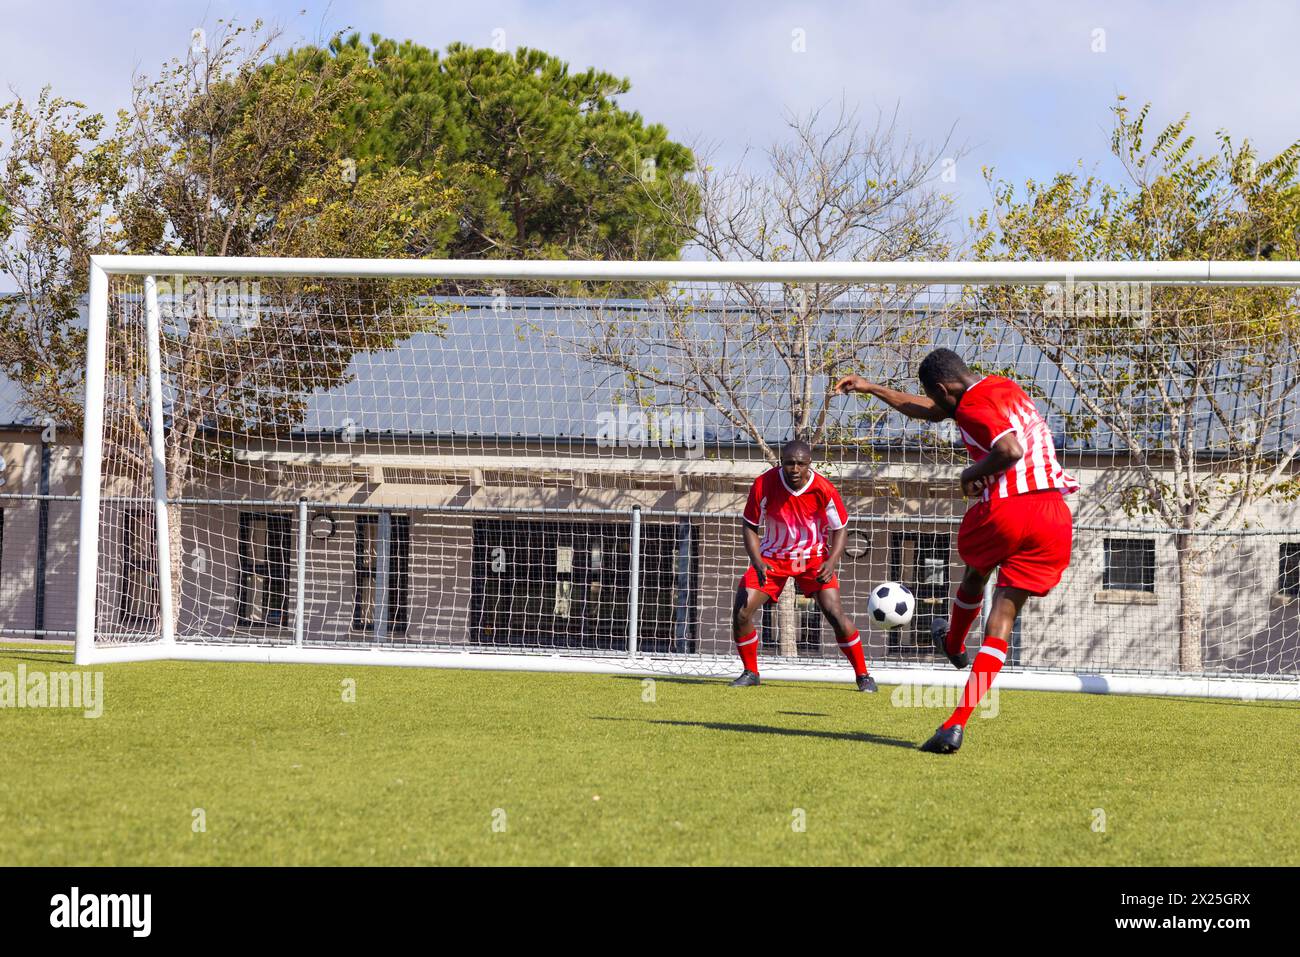 Zwei afroamerikanische junge männliche Athleten spielen auf dem Feld draußen Fußball, einer tritt den Ball Stockfoto